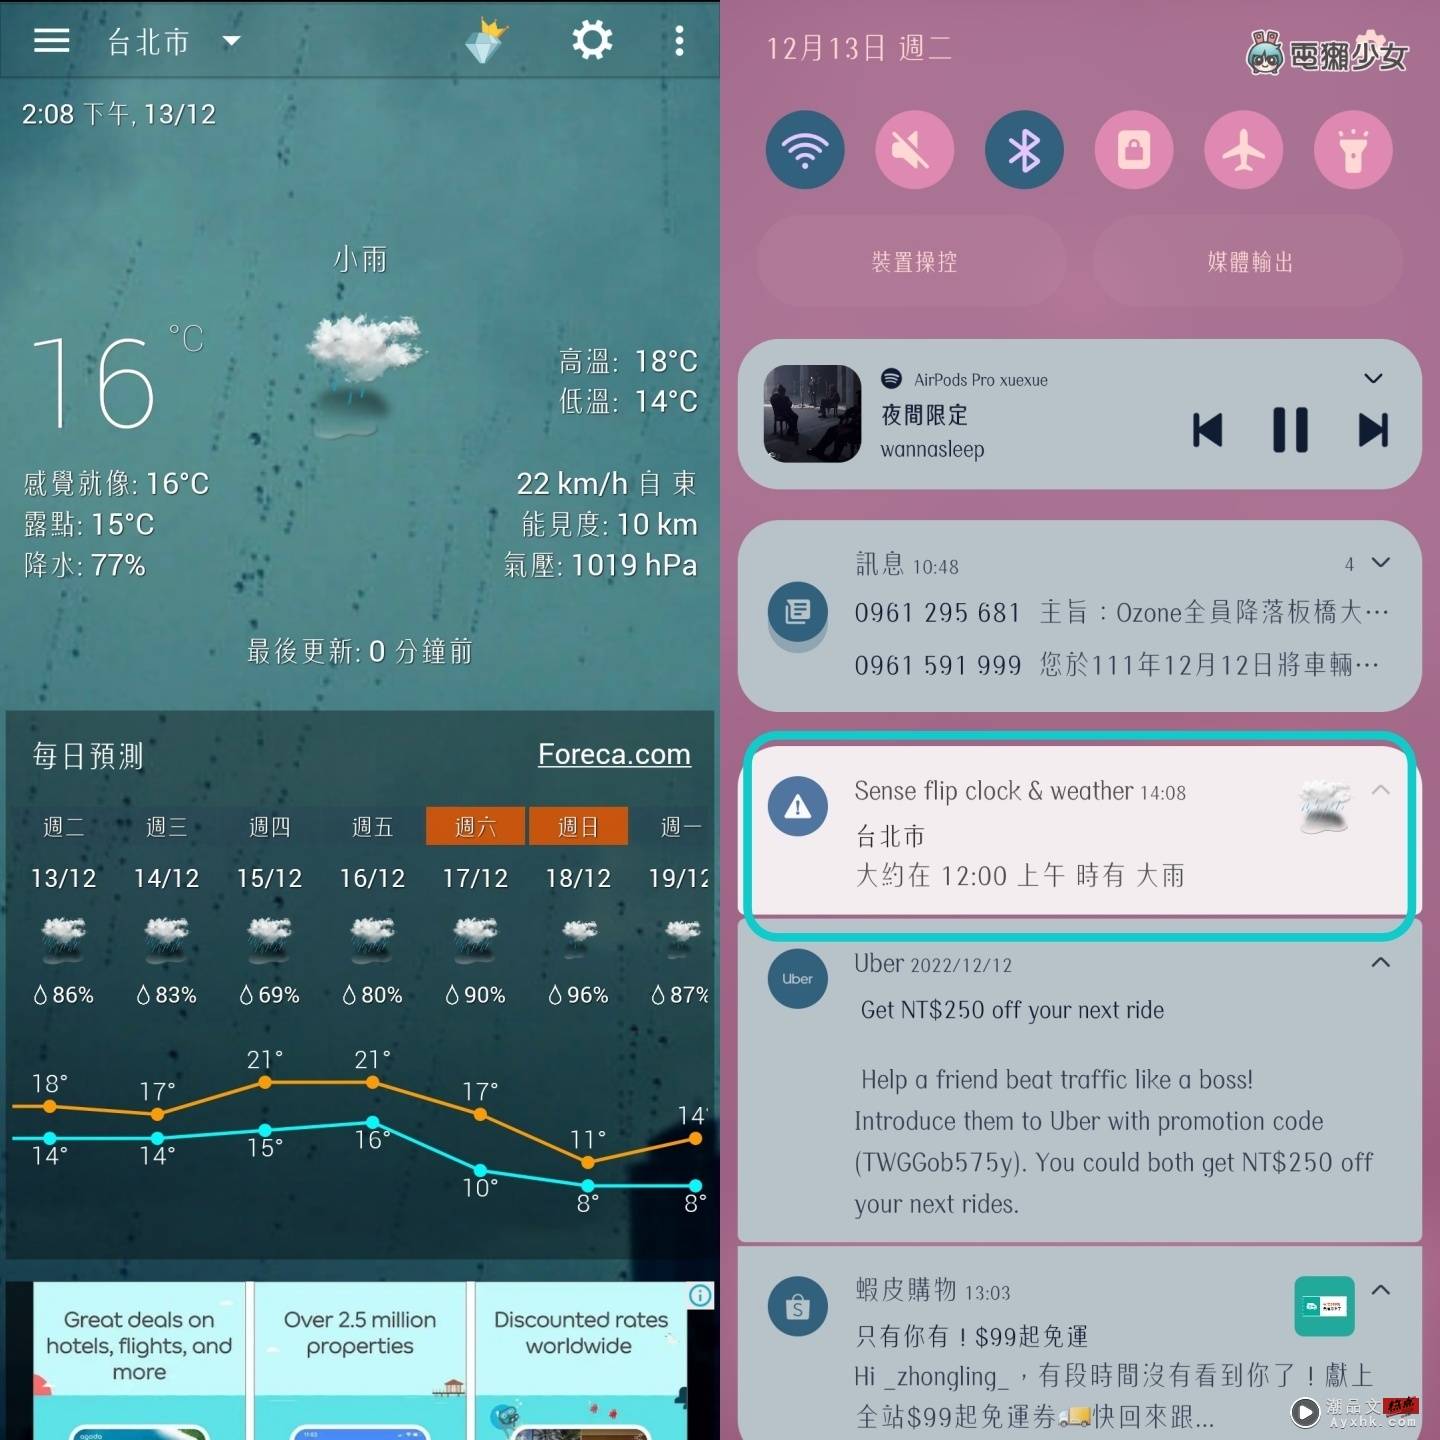 怀念 HTC 翻页时钟？App‘ Sense 翻页时钟和天气 ’让你一秒重温 还以为手上的三星手机是 HTC！（Android） 数码科技 图2张